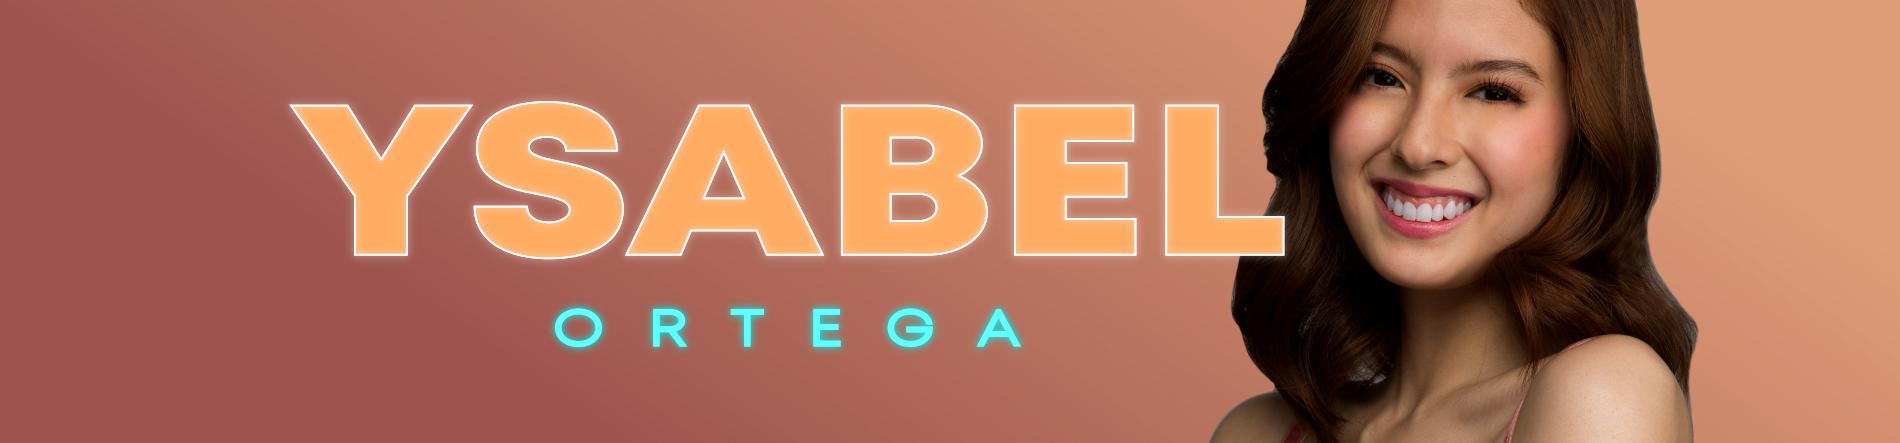 Ysabel Ortega Desktop Banner